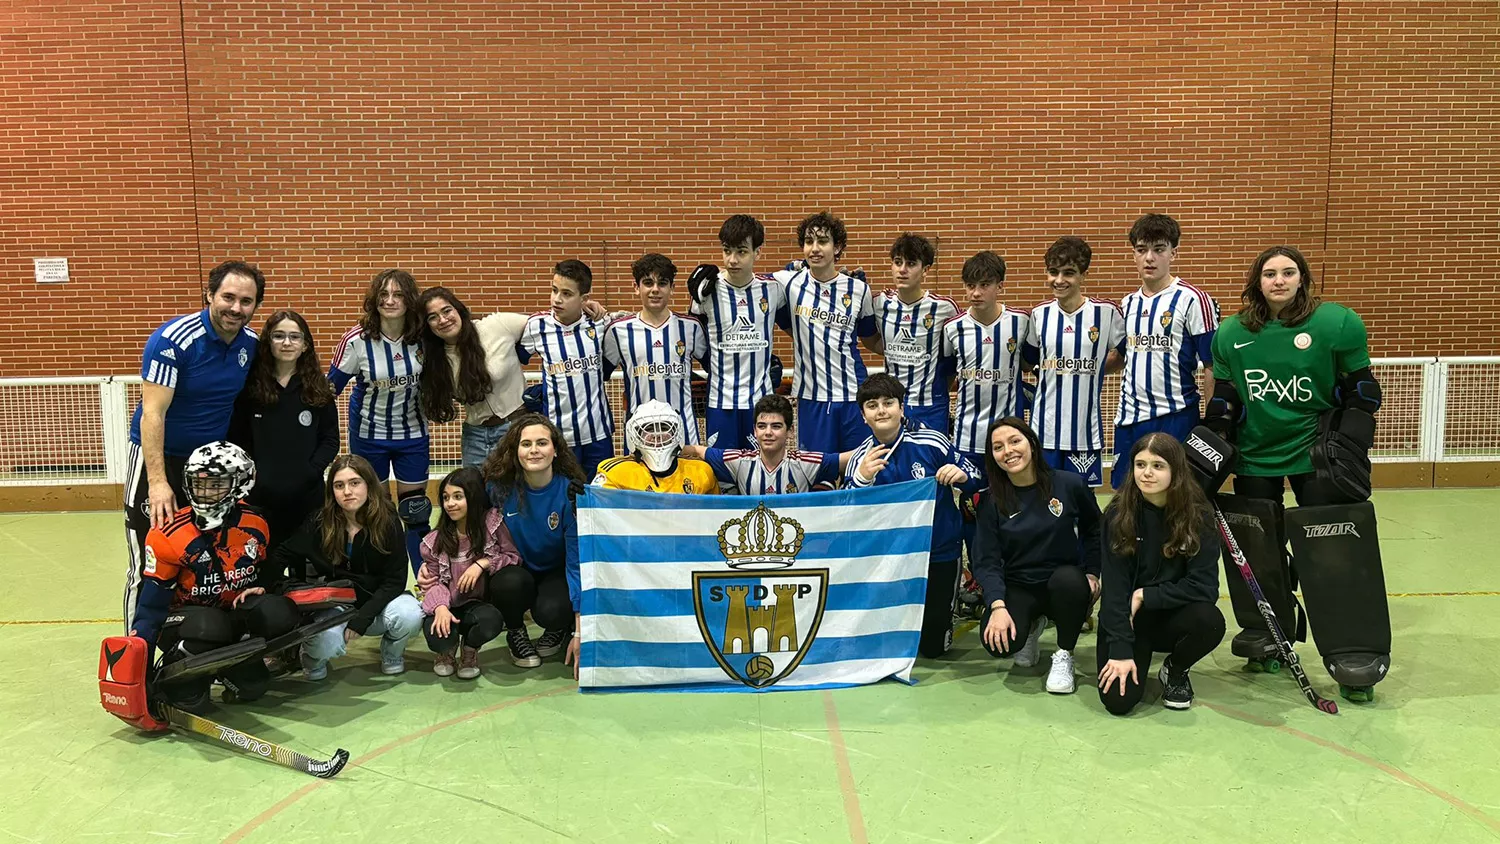 La Ponferradina Hockey campeón infantil y subcampeón Alevín y Juvenil de Castilla y León